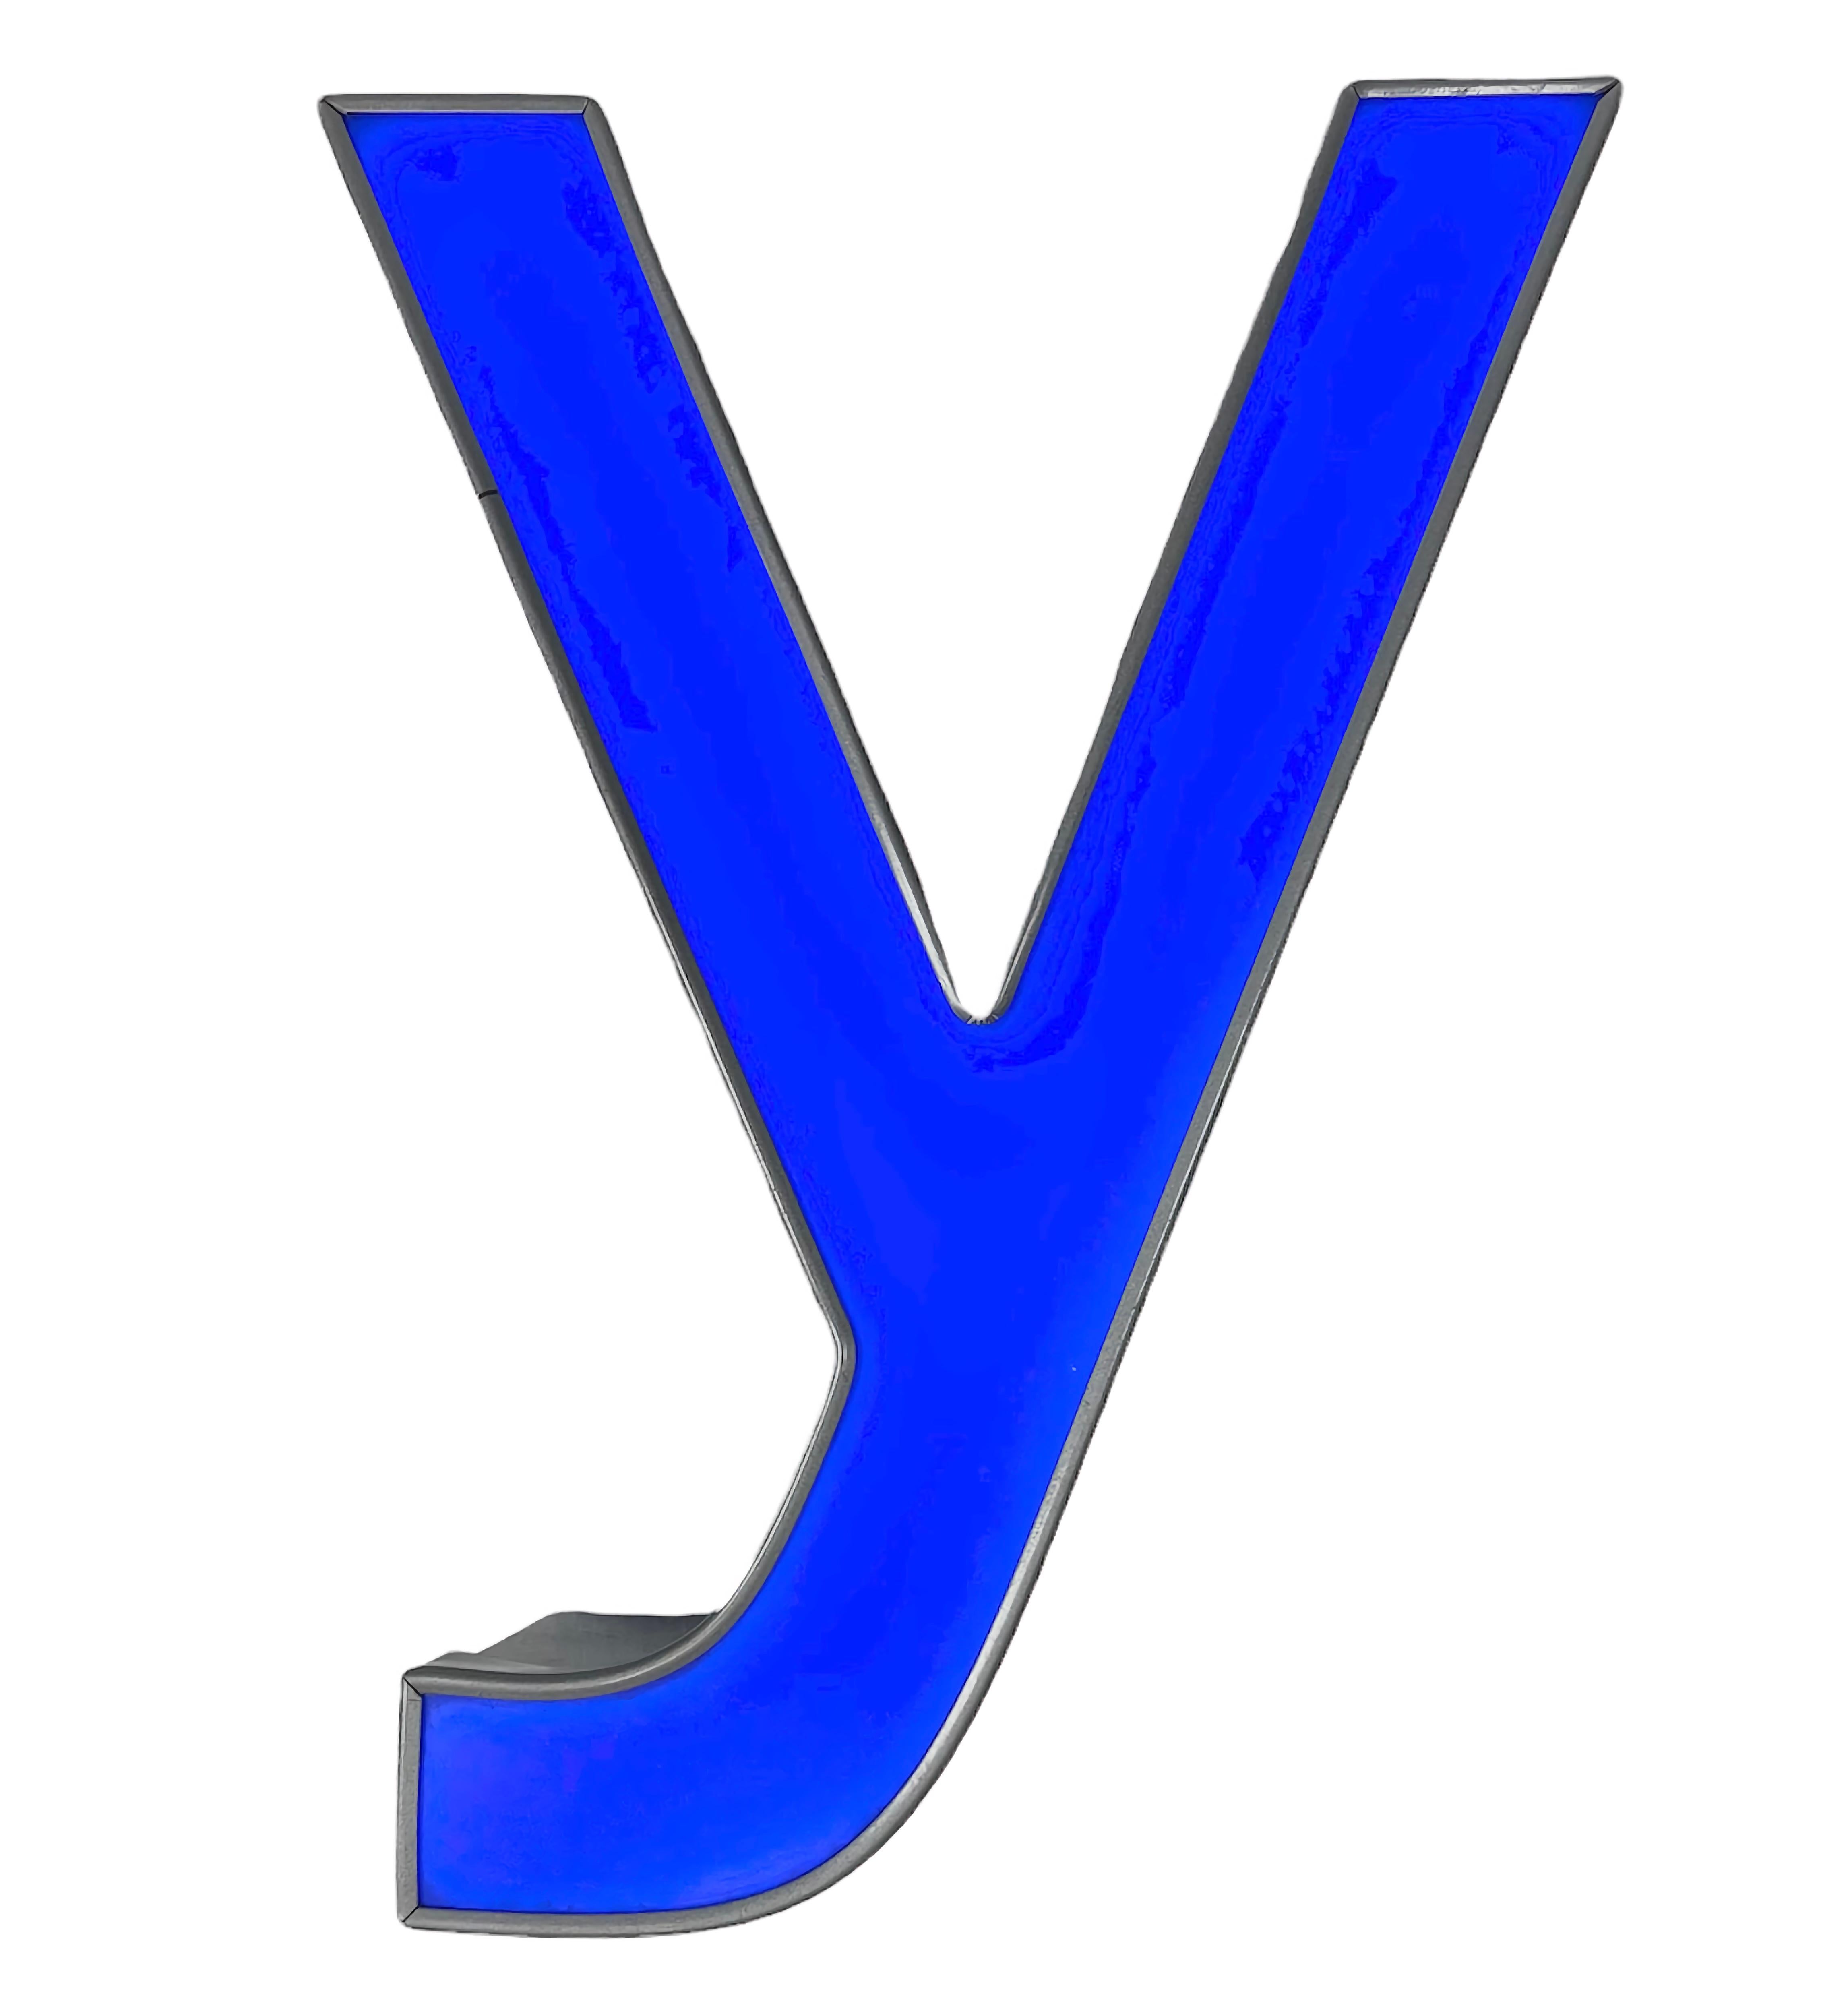 Dieser blau beleuchtete Vintage-Buchstabe Y wurde in den 1980er Jahren in den Niederlanden hergestellt und stammt von einem alten Werbebanner. Der Korpus ist aus grauem Eisen und das Gesicht aus blauem Plexiglas. Der Brief ist mit einer